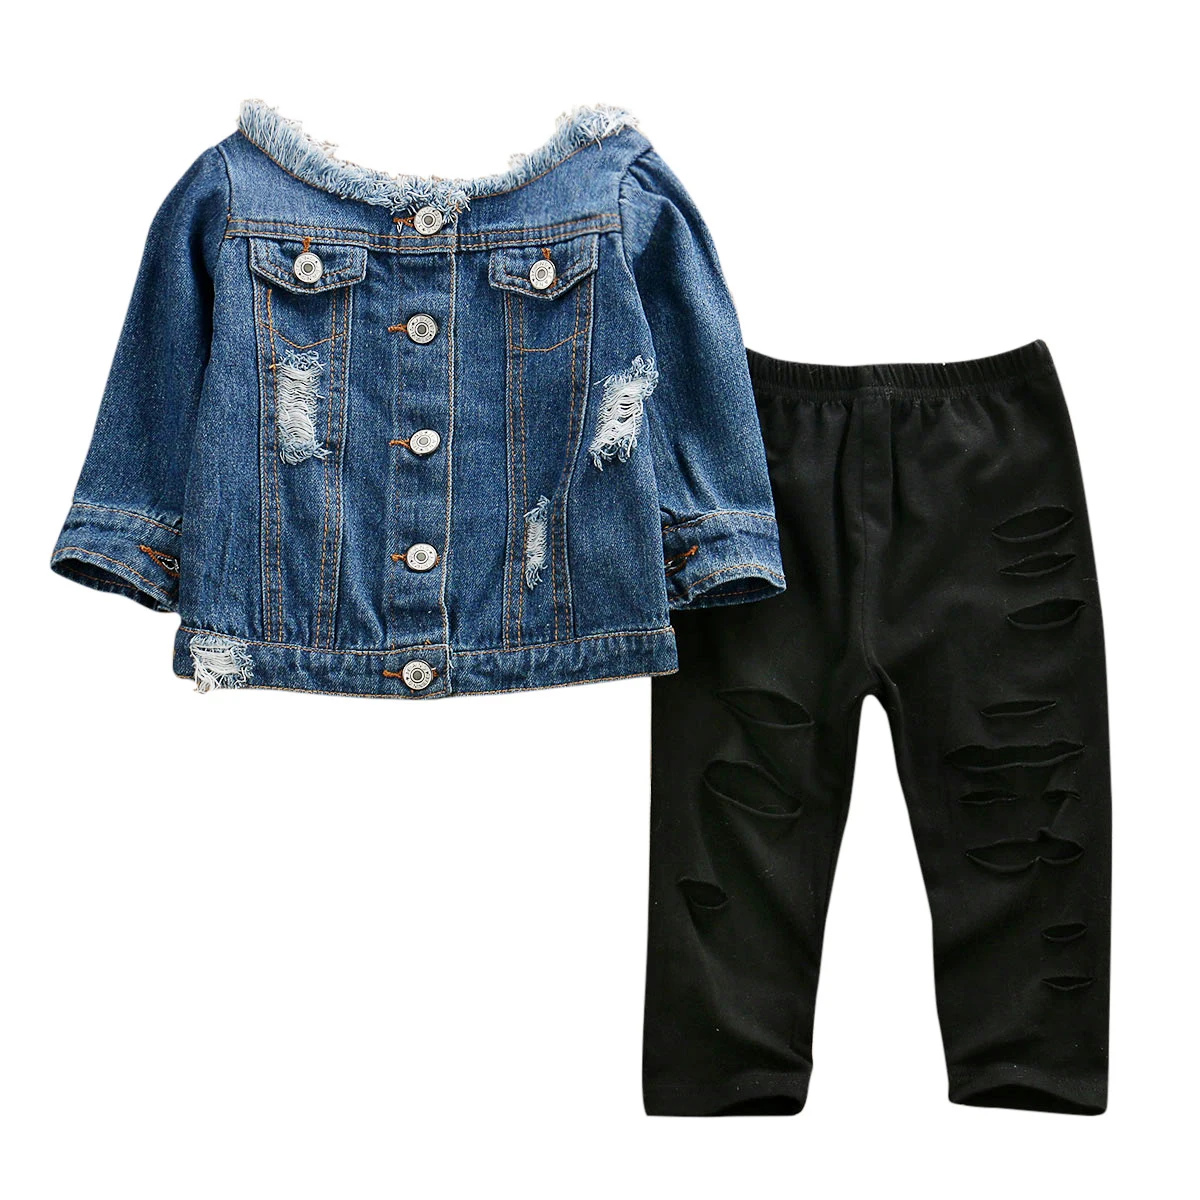 Одежда для маленьких девочек комплекты От 1 до 6 лет джинсовые топы с открытыми плечами с прорезями узкие брюки Комплект осенней одежды - Цвет: Синий